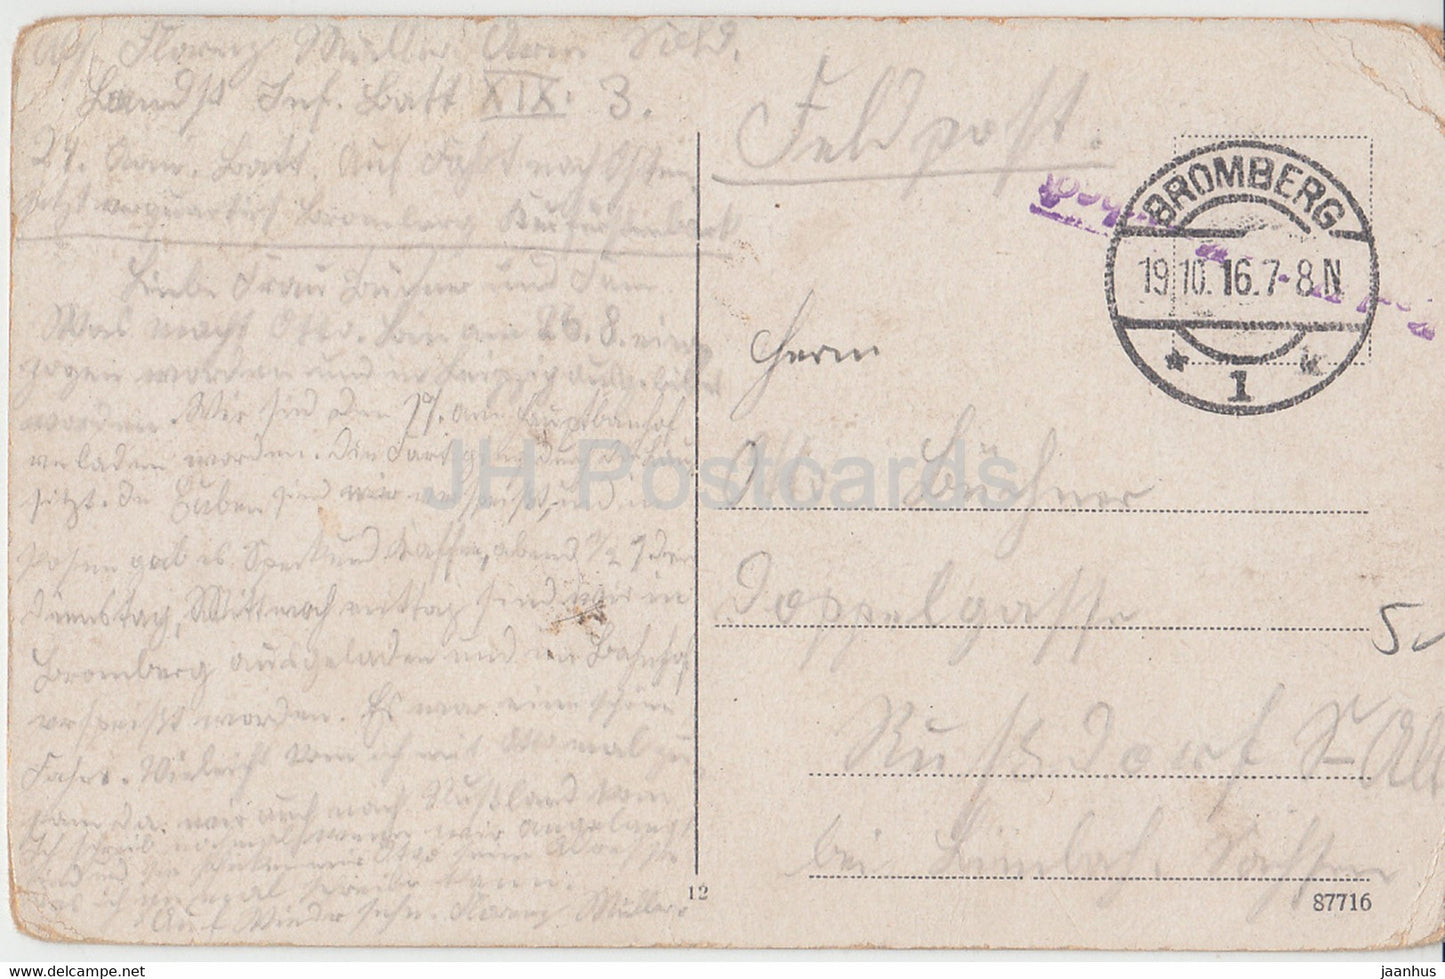 Bromberg - Bydgoszcz - Danziger und Bismarckstraße - Feldpost - alte Postkarte - 1916 - Polen - gebraucht